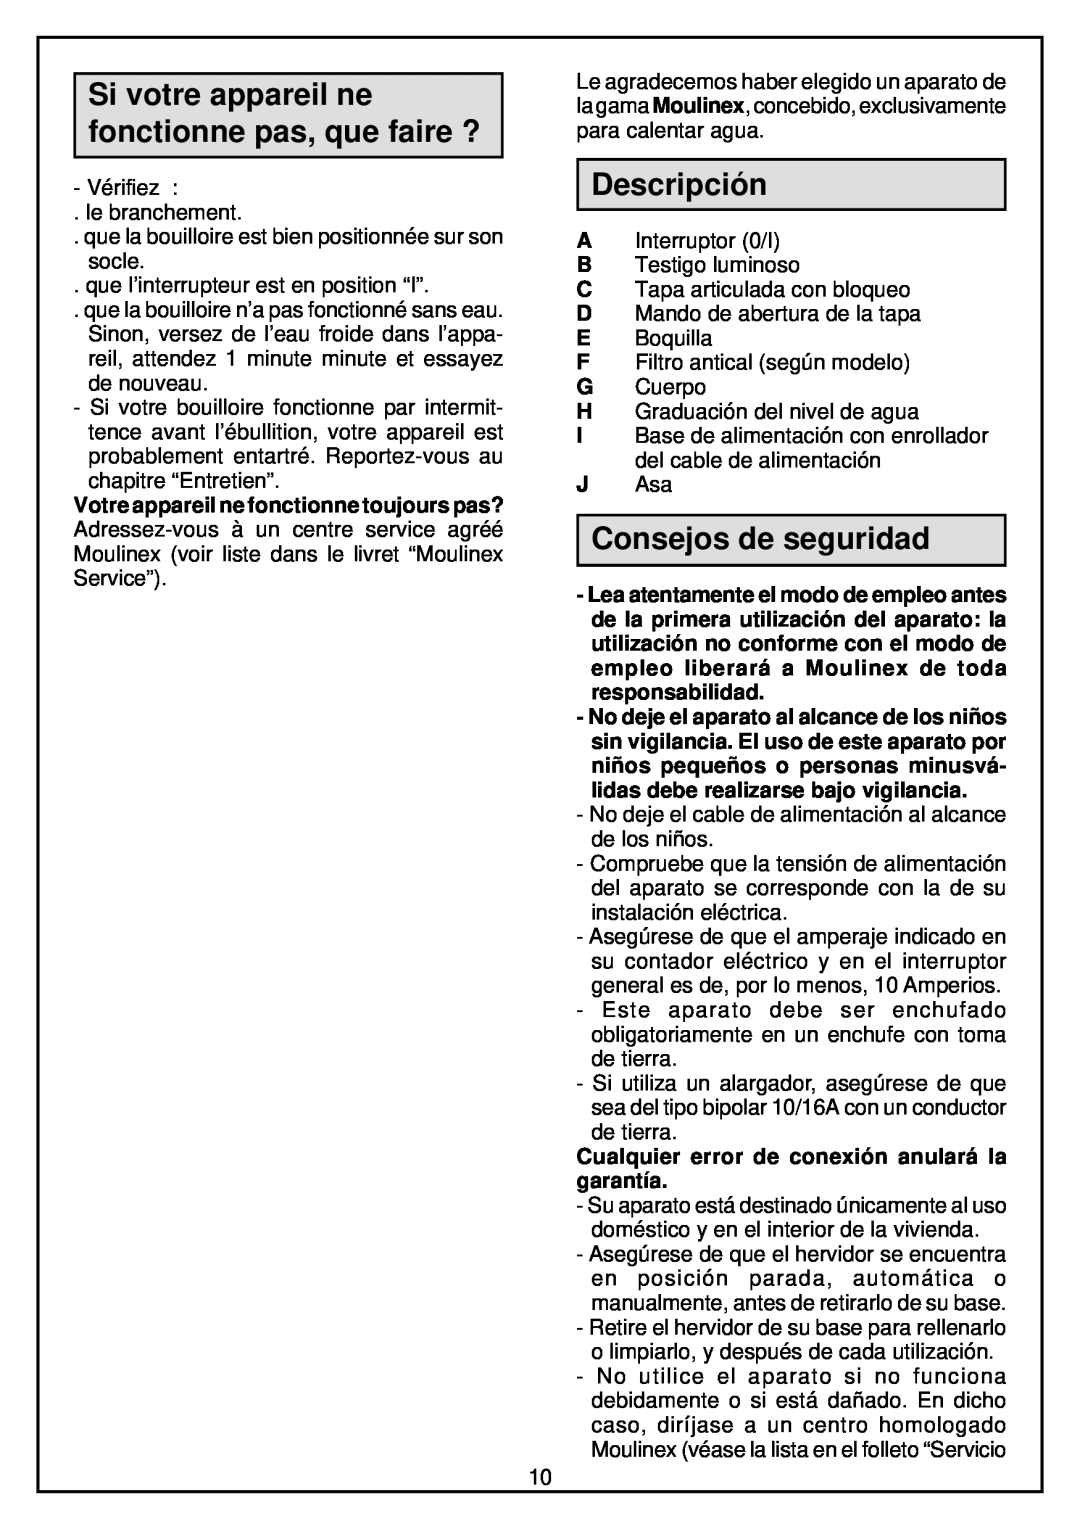 Moulinex Kettle manual Si votre appareil ne fonctionne pas, que faire ?, Descripción, Consejos de seguridad 